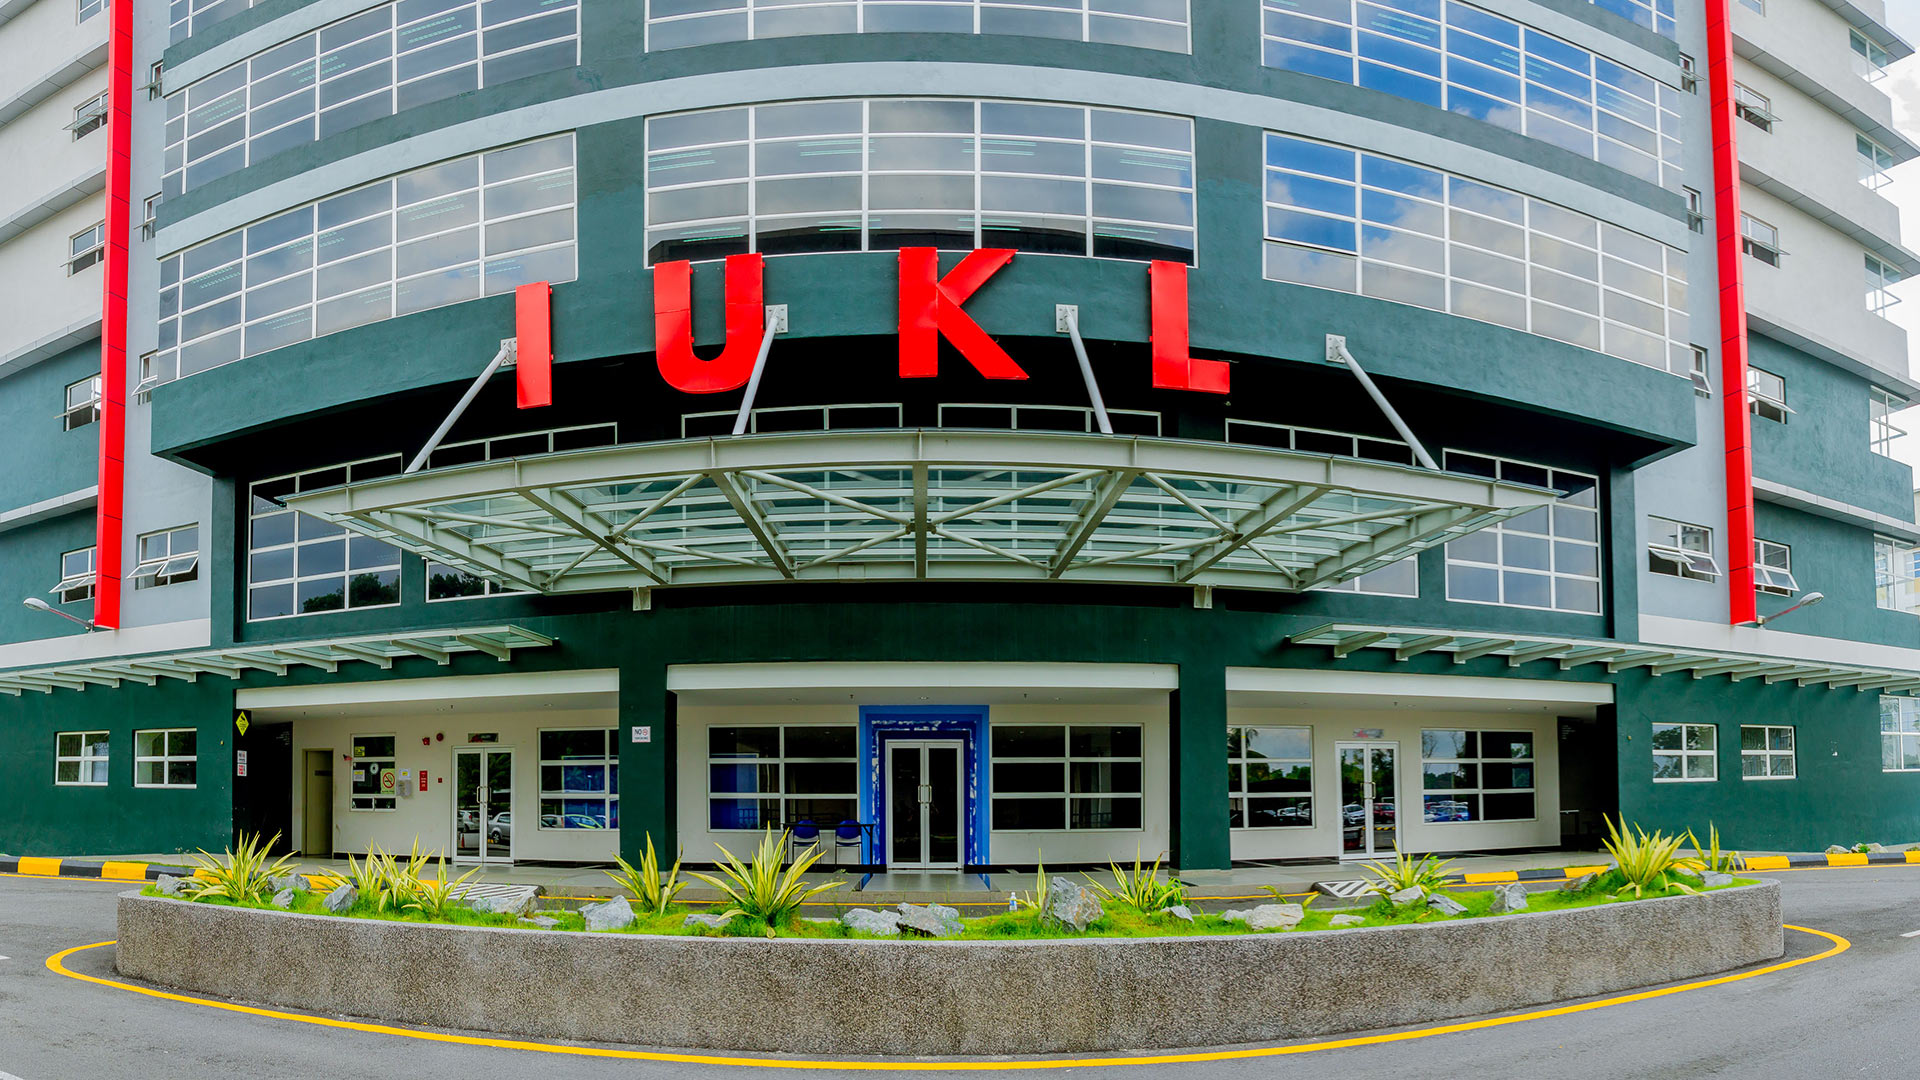 IUKL - Infrastructure University Kuala Lumpur